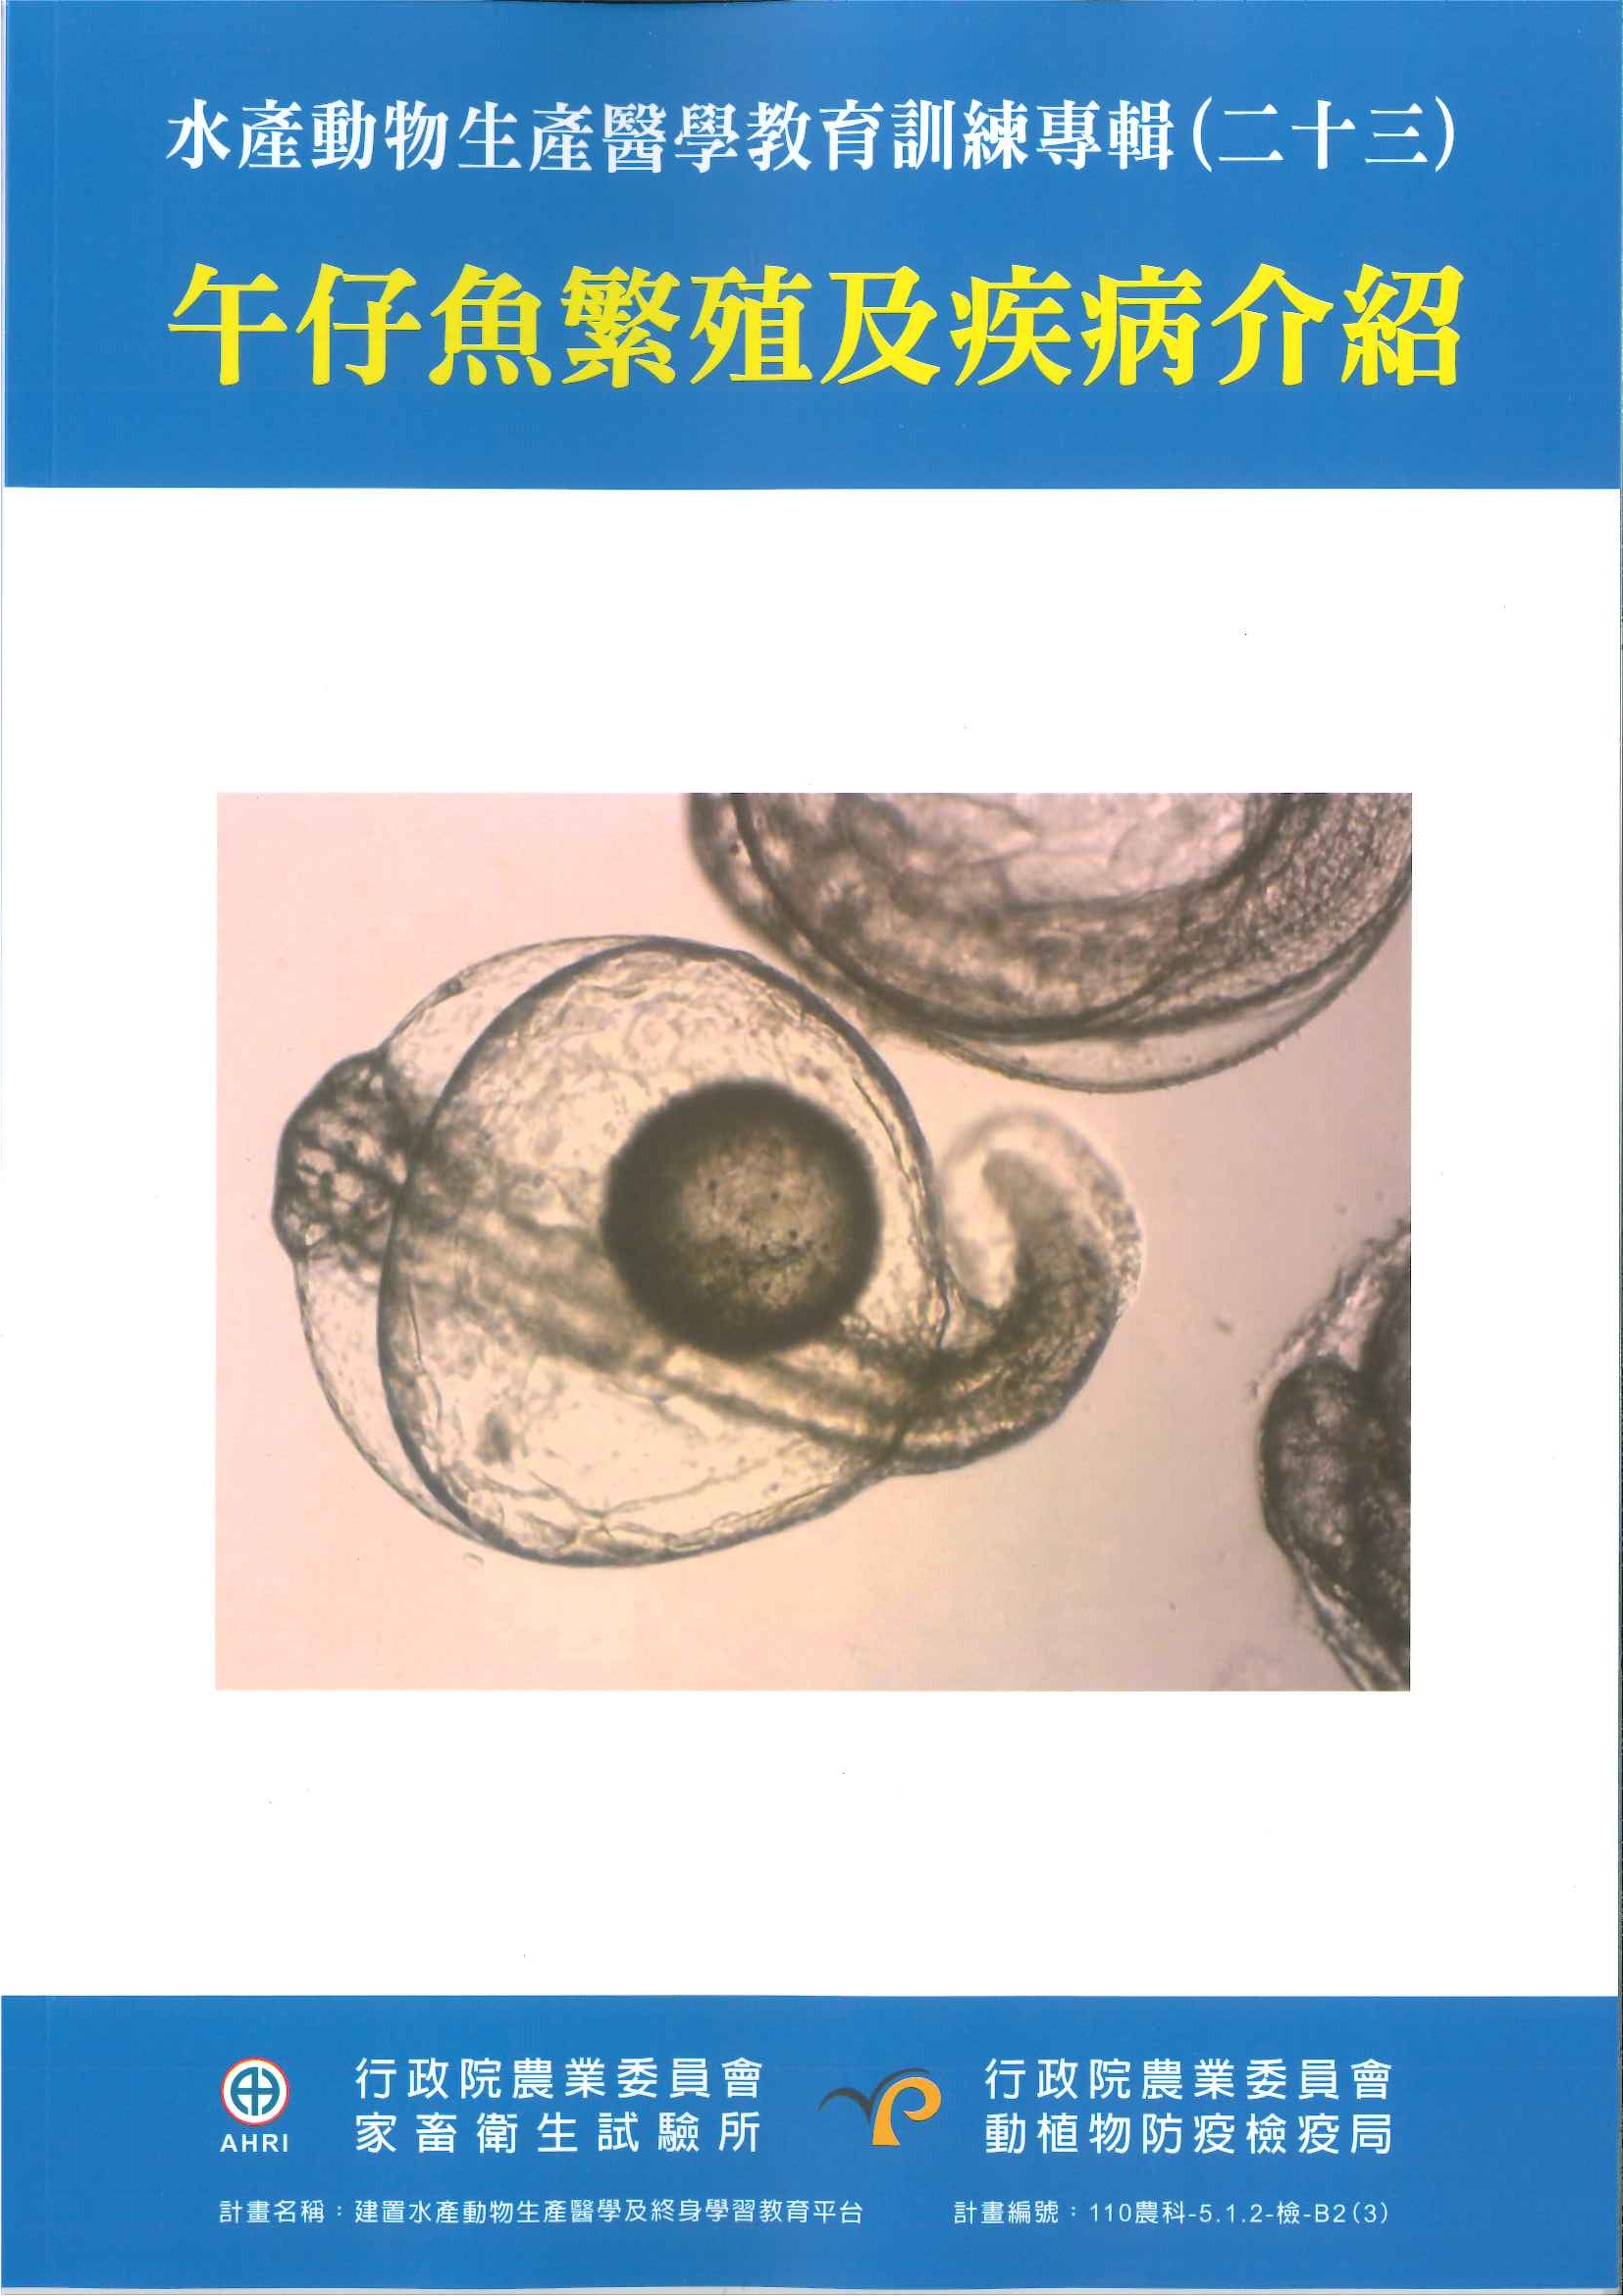 水產動物生產醫學教育訓練專輯(二十三)午仔魚繁殖、重要疾病防治